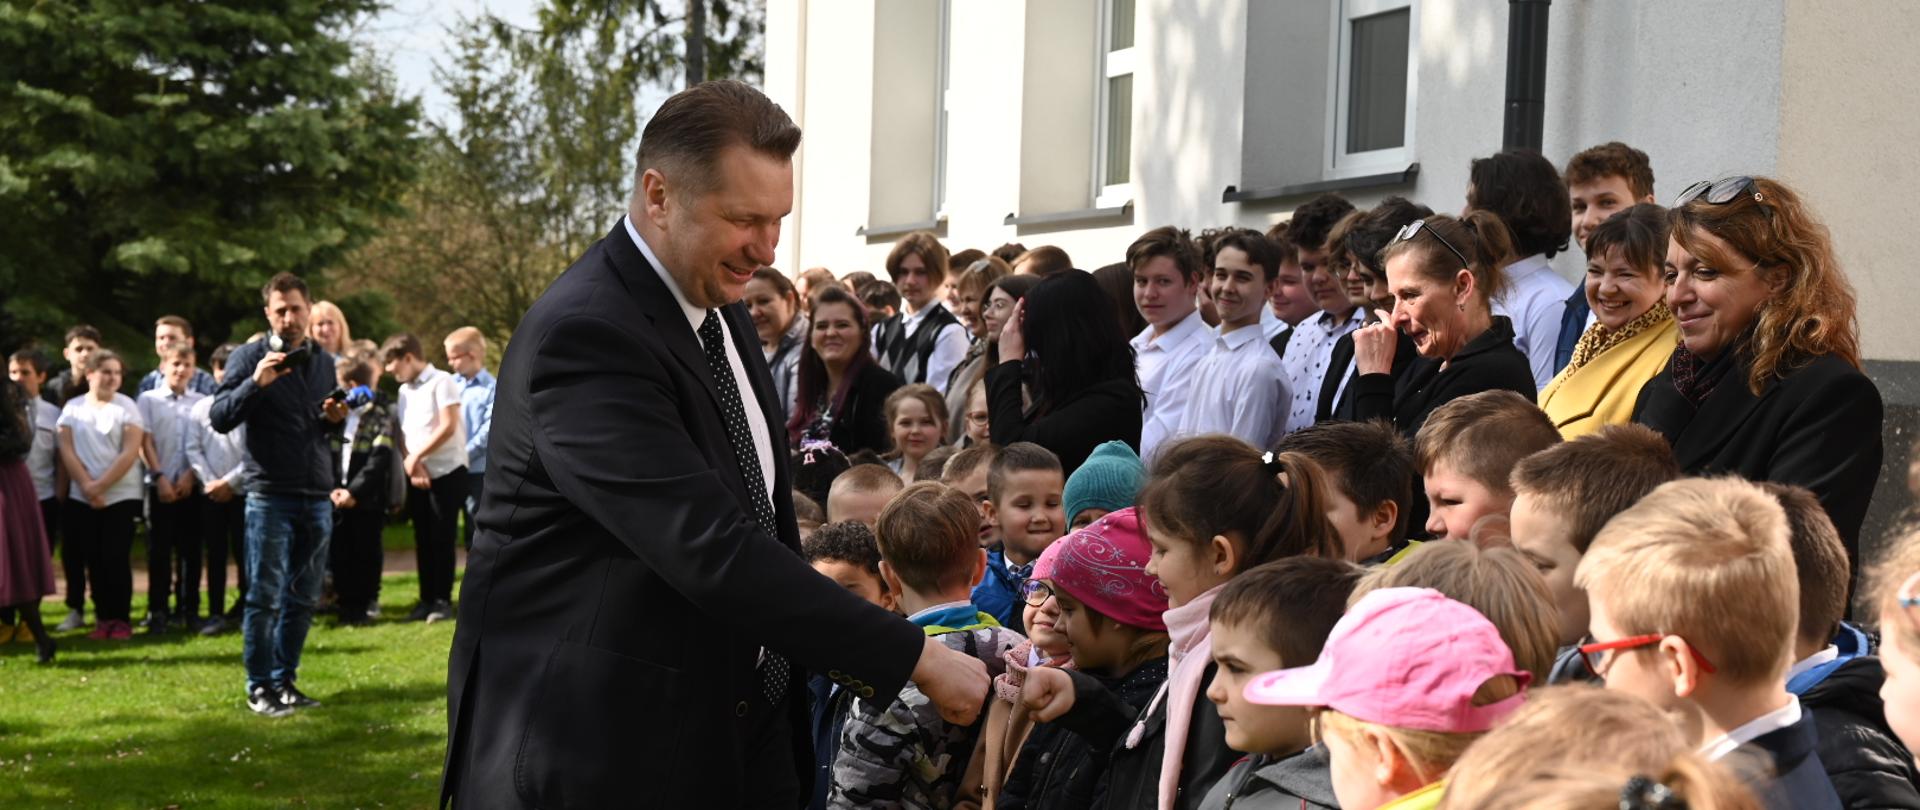 Minister przybija piątkę z małą dziewczynką, stojącą wśród dzieci pod ścianą budynku.